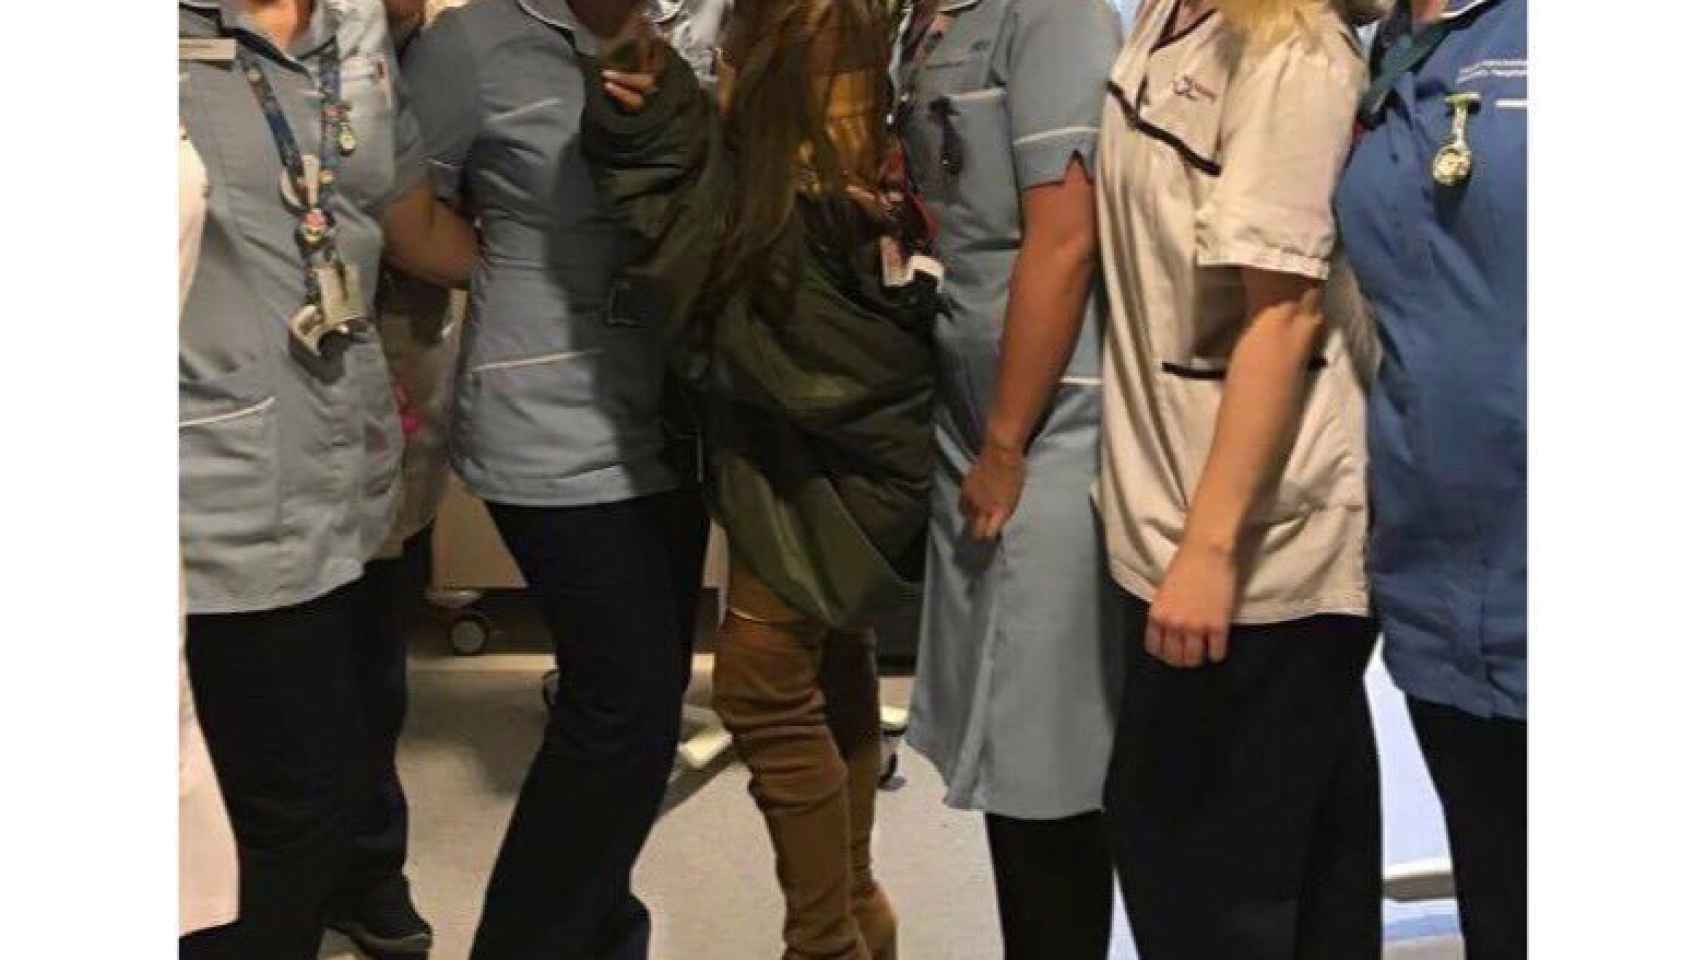 La cantante junto a las enfermeras que atienden a los enfermos del atentado.